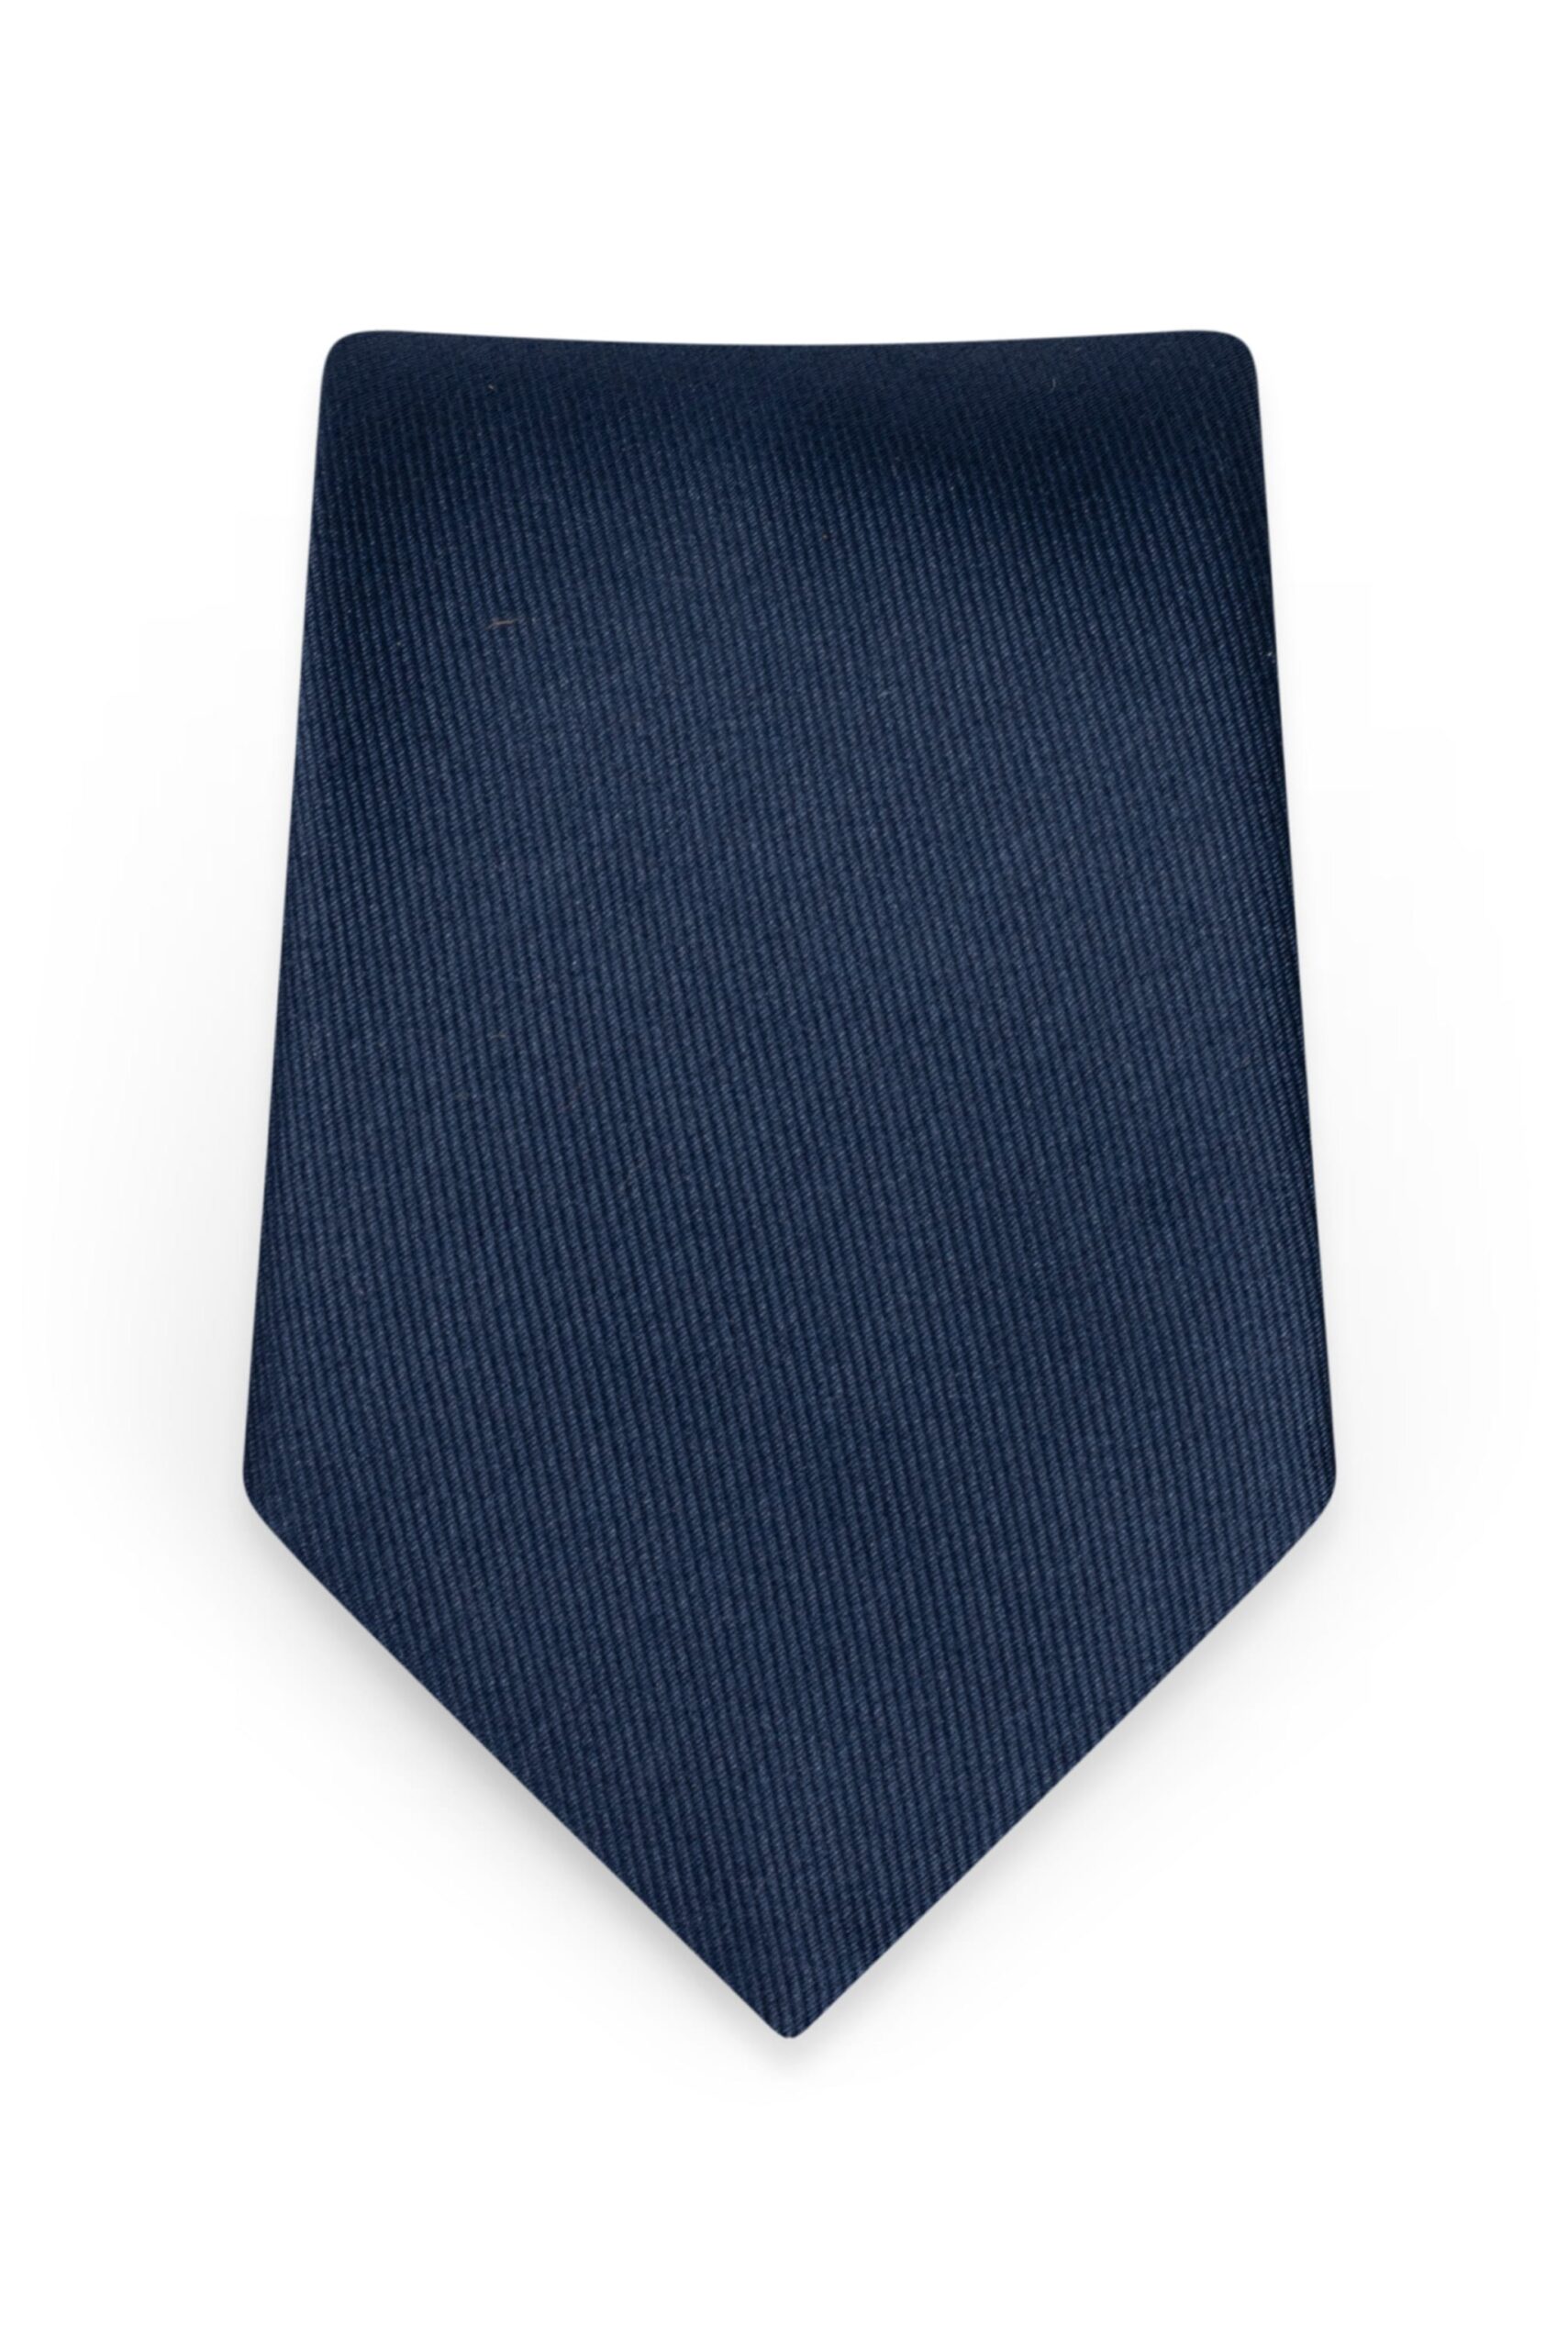 Solid Navy Self-Tie Windsor Tie 1